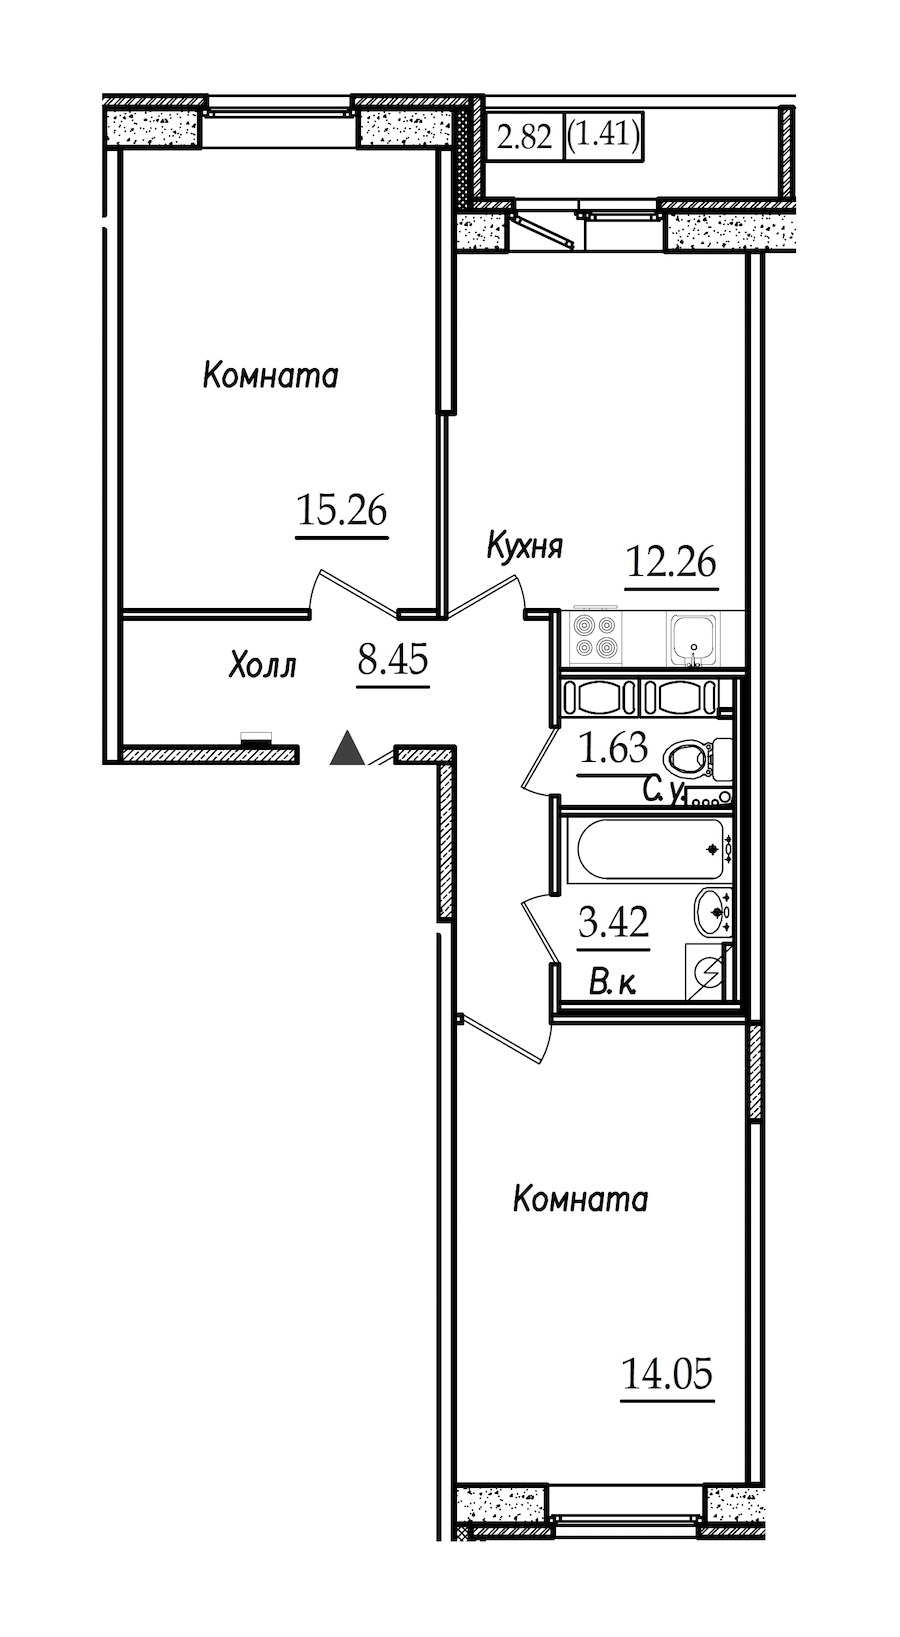 Двухкомнатная квартира в : площадь 56.48 м2 , этаж: 2 – купить в Санкт-Петербурге